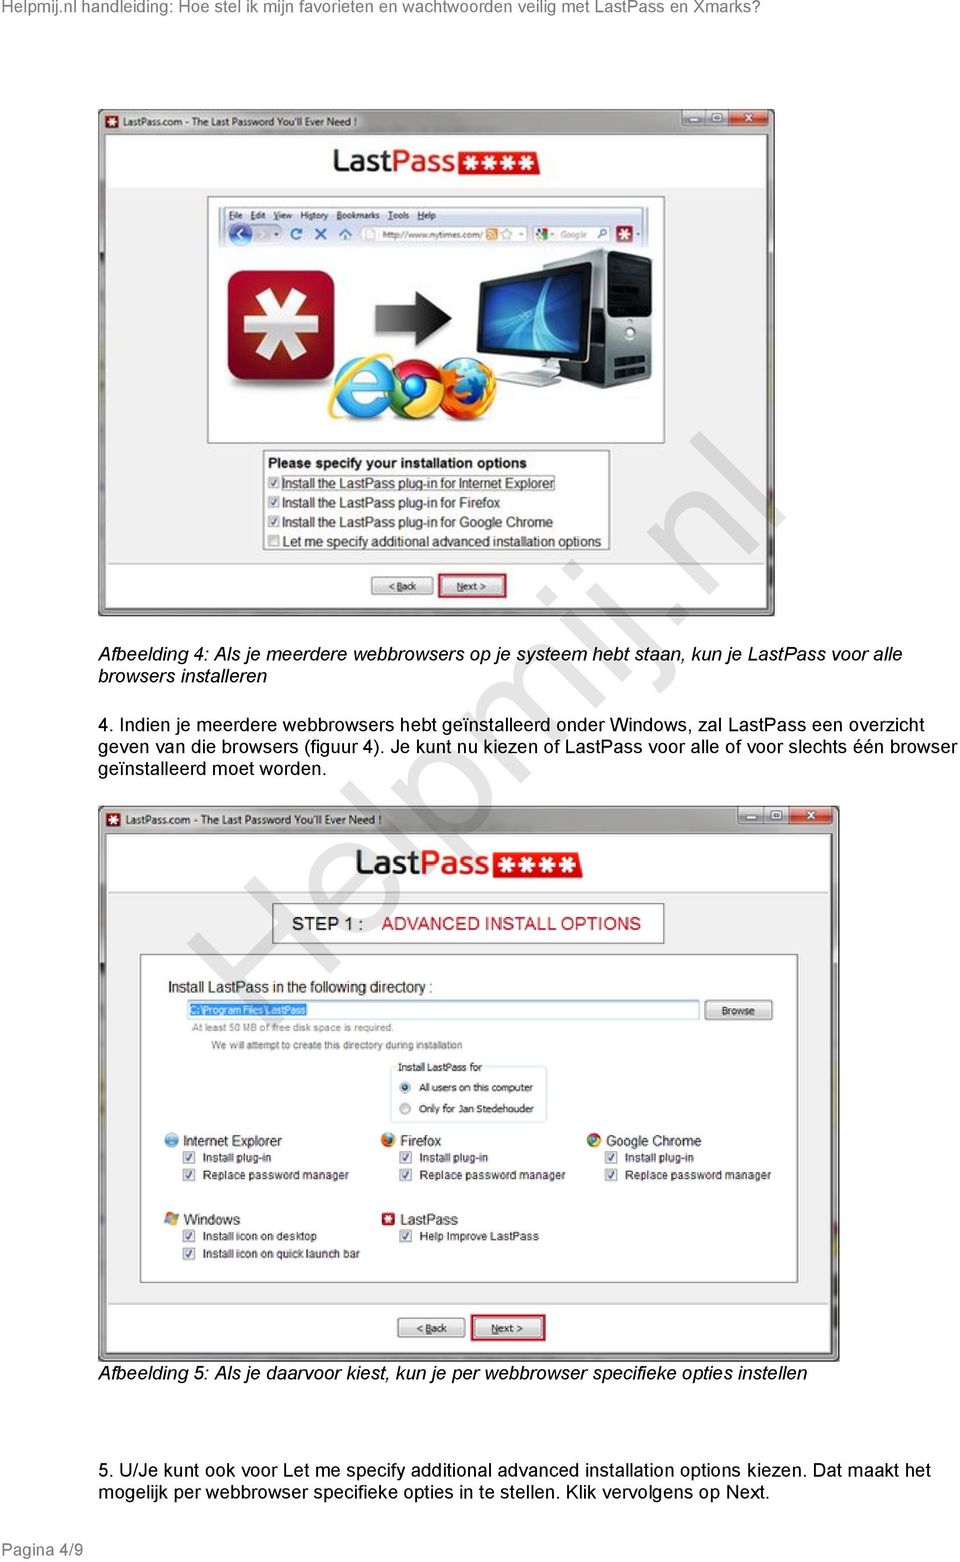 Je kunt nu kiezen of LastPass voor alle of voor slechts één browser geïnstalleerd moet worden.